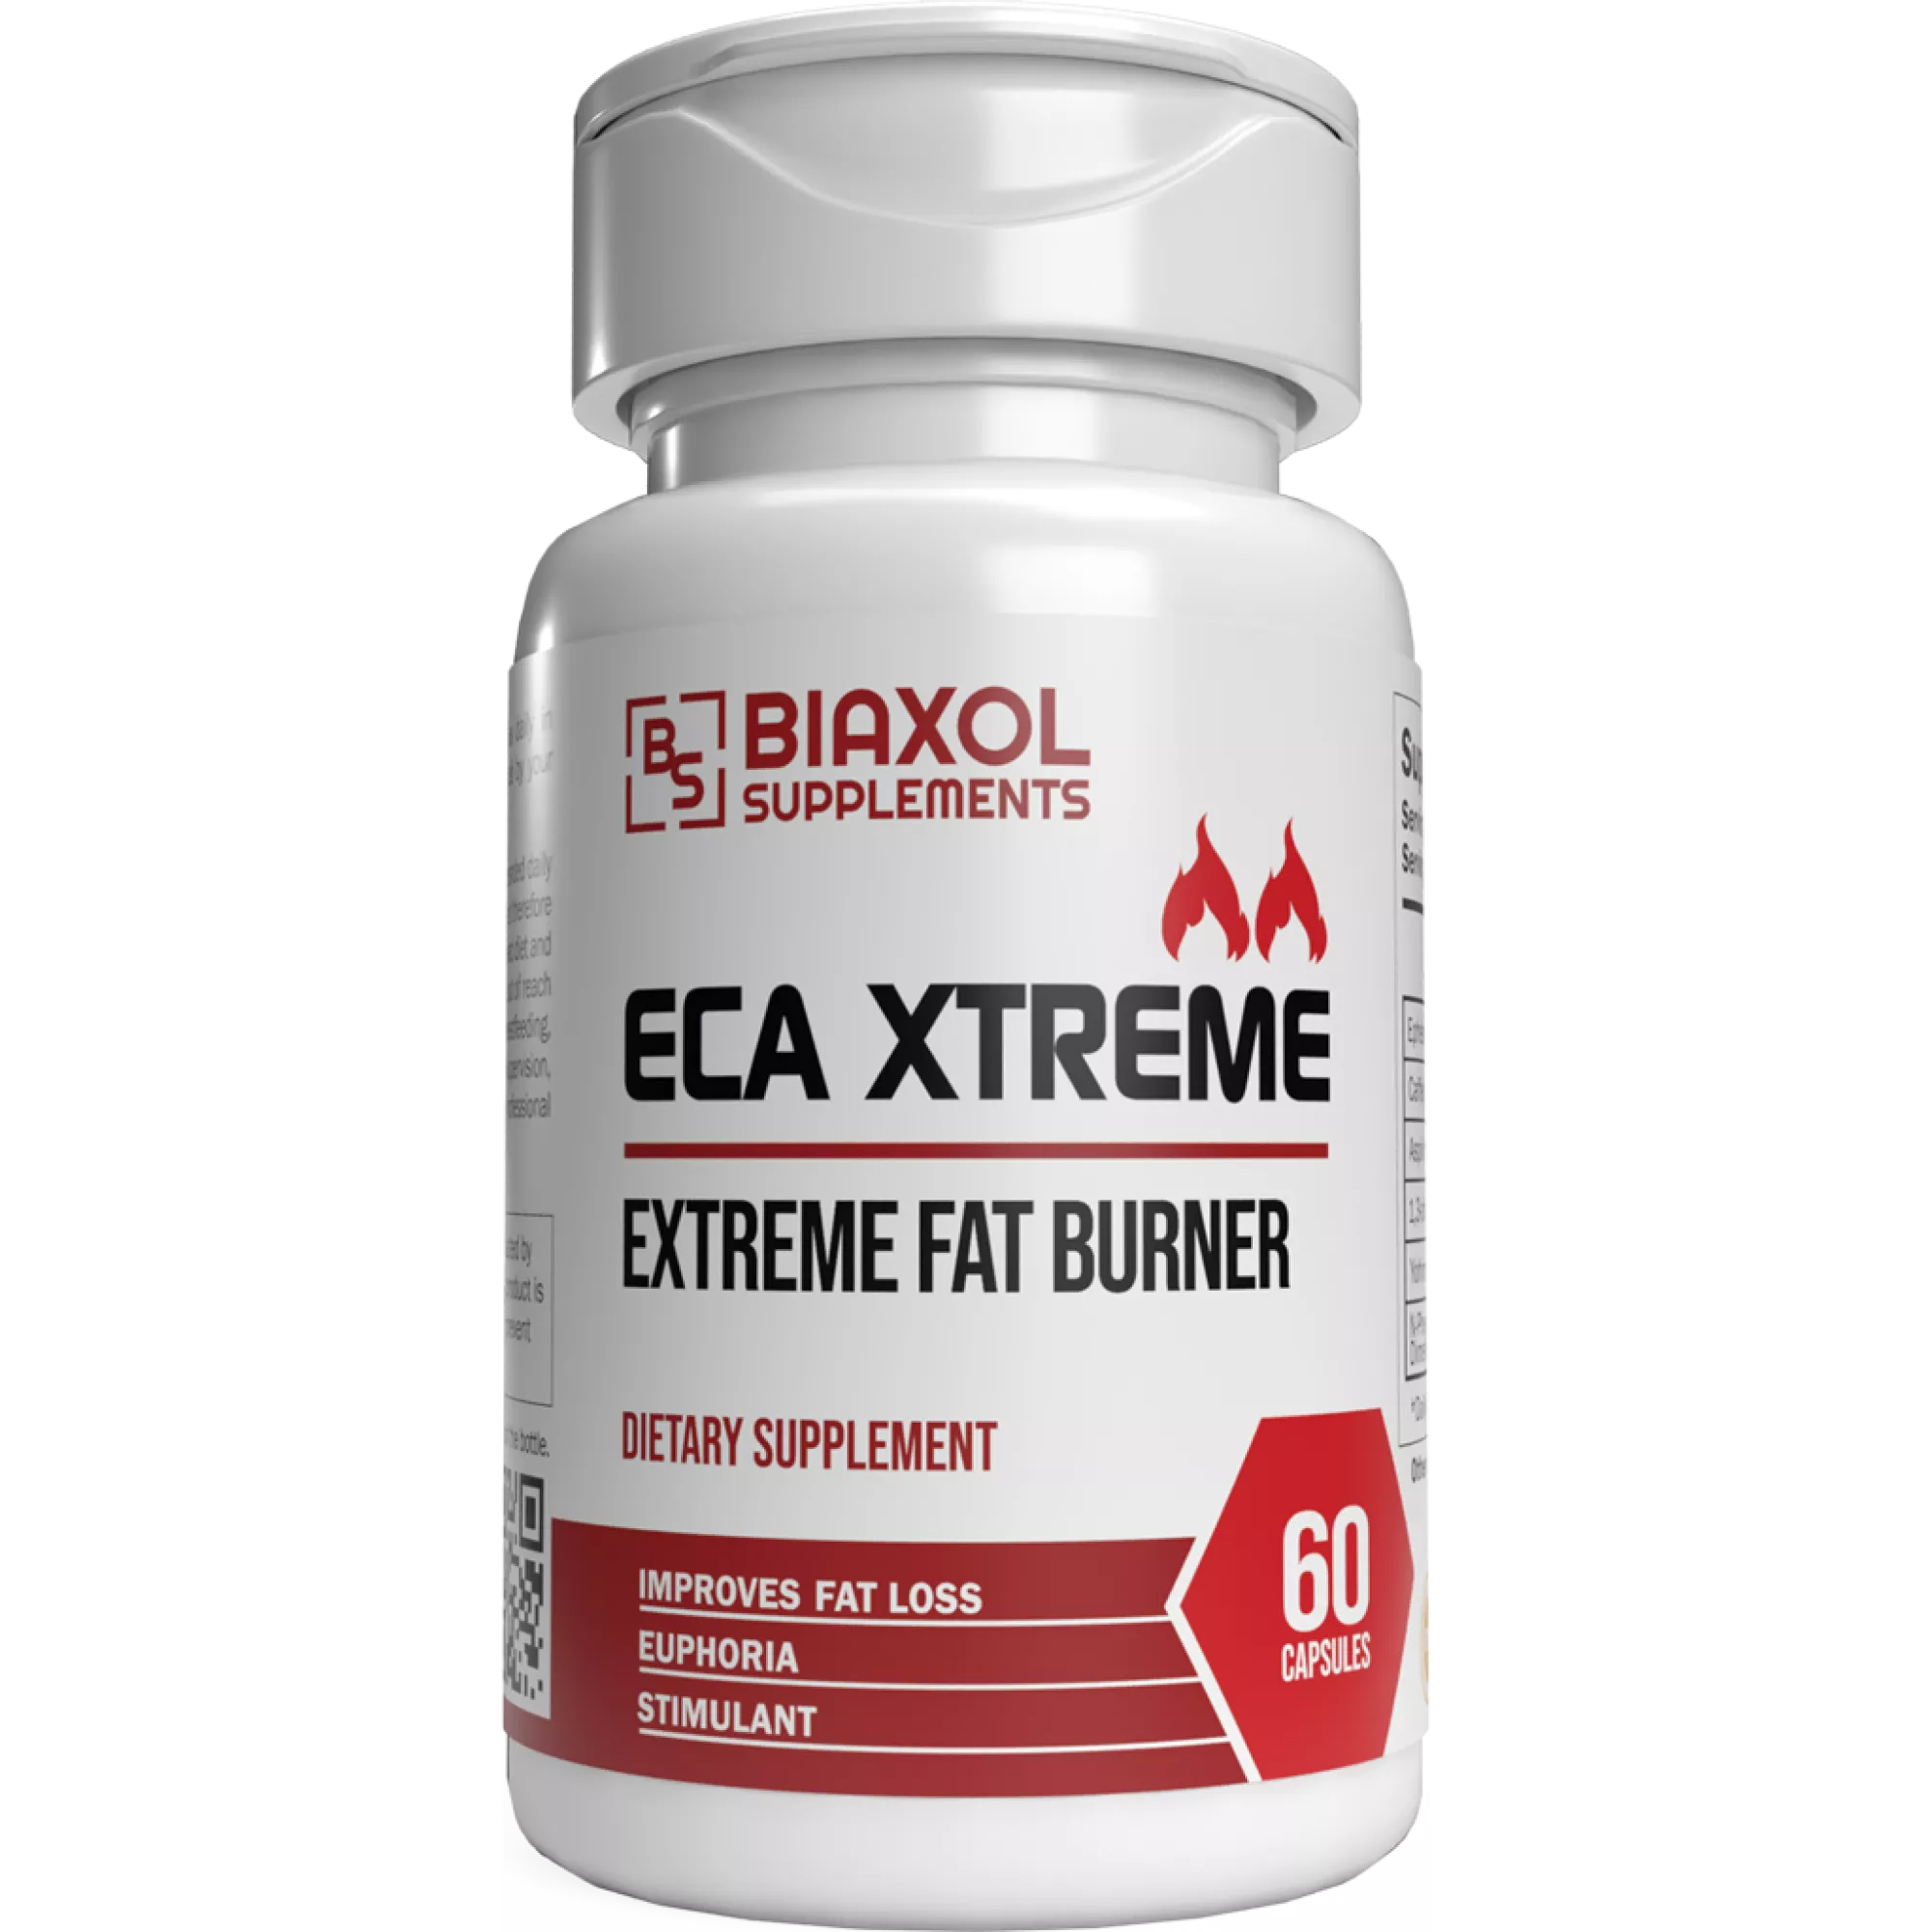 ECA XTREME (Extreme Fat Burner), Biaxol, Köp steroider online - www.deuspower.shop